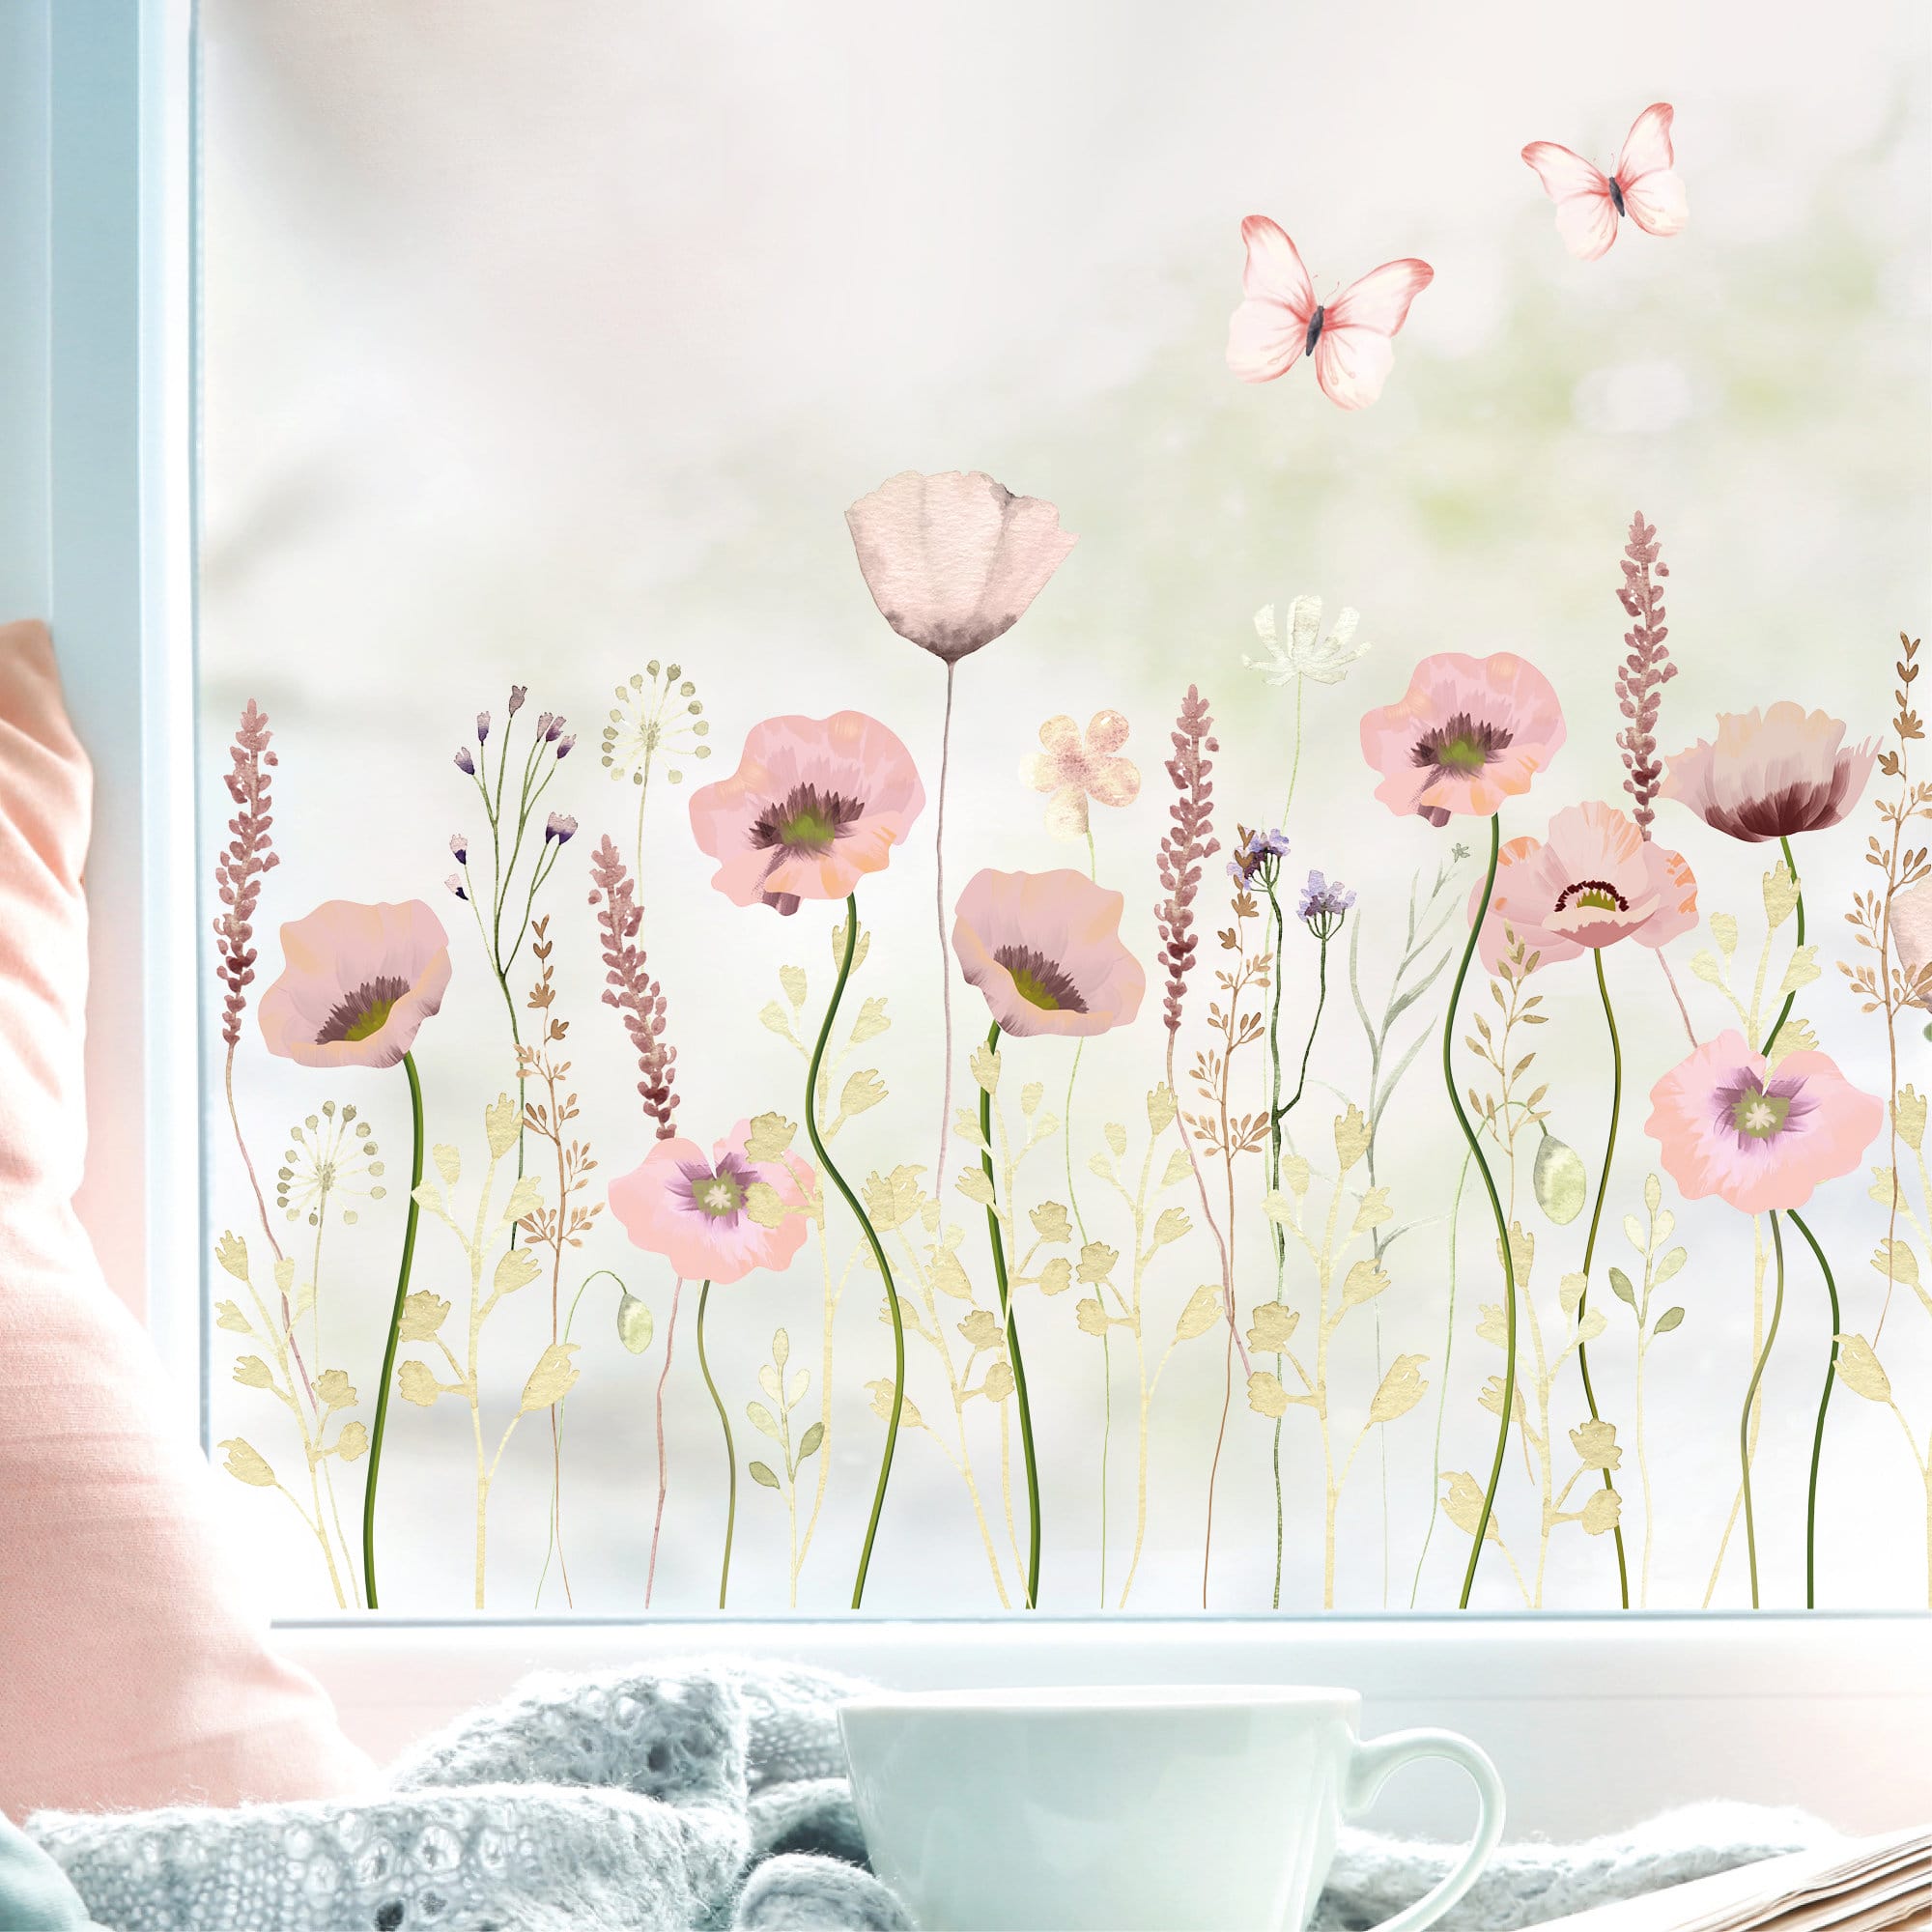 Fensterbild Mohnblumenwiese rosa wiederverwendbar pastell Blumenwiese mit Schmetterlingen Fensterdekoration